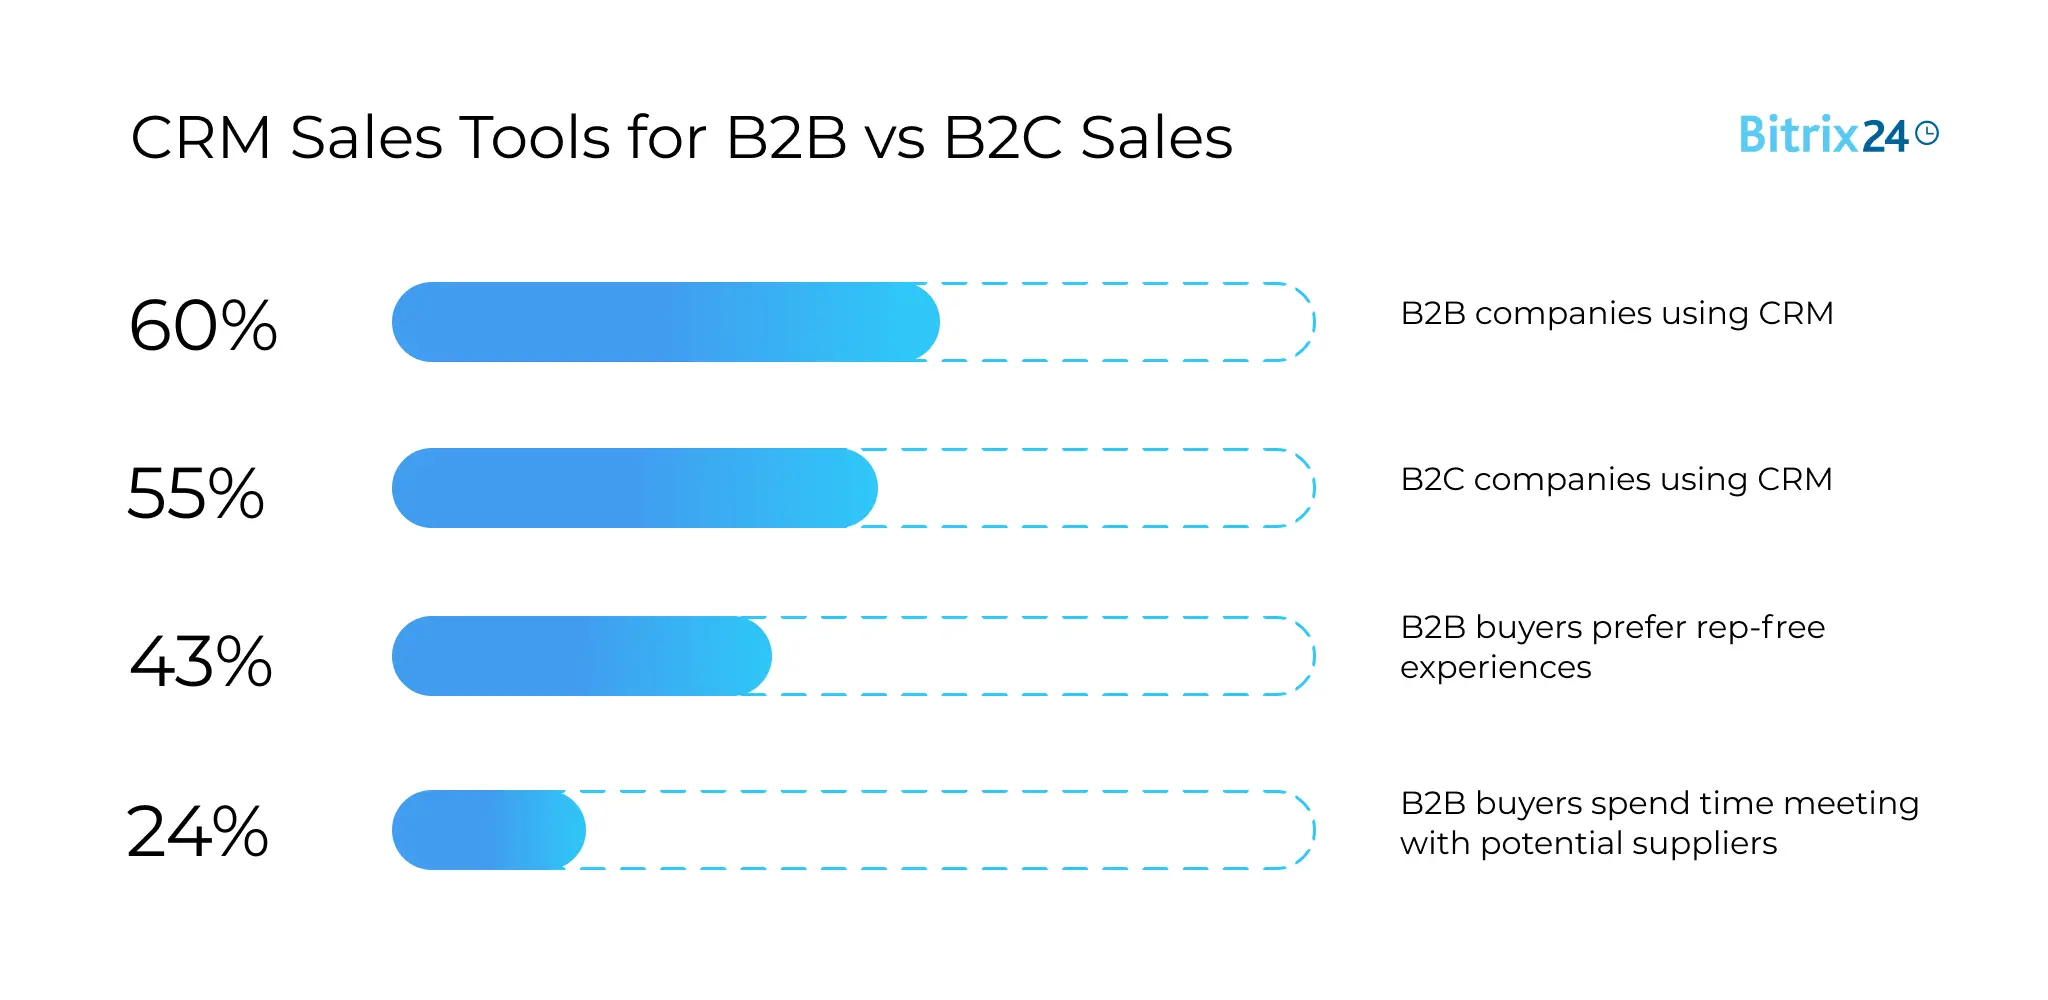 CRM Sales Tools for B2B vs B2C Sales